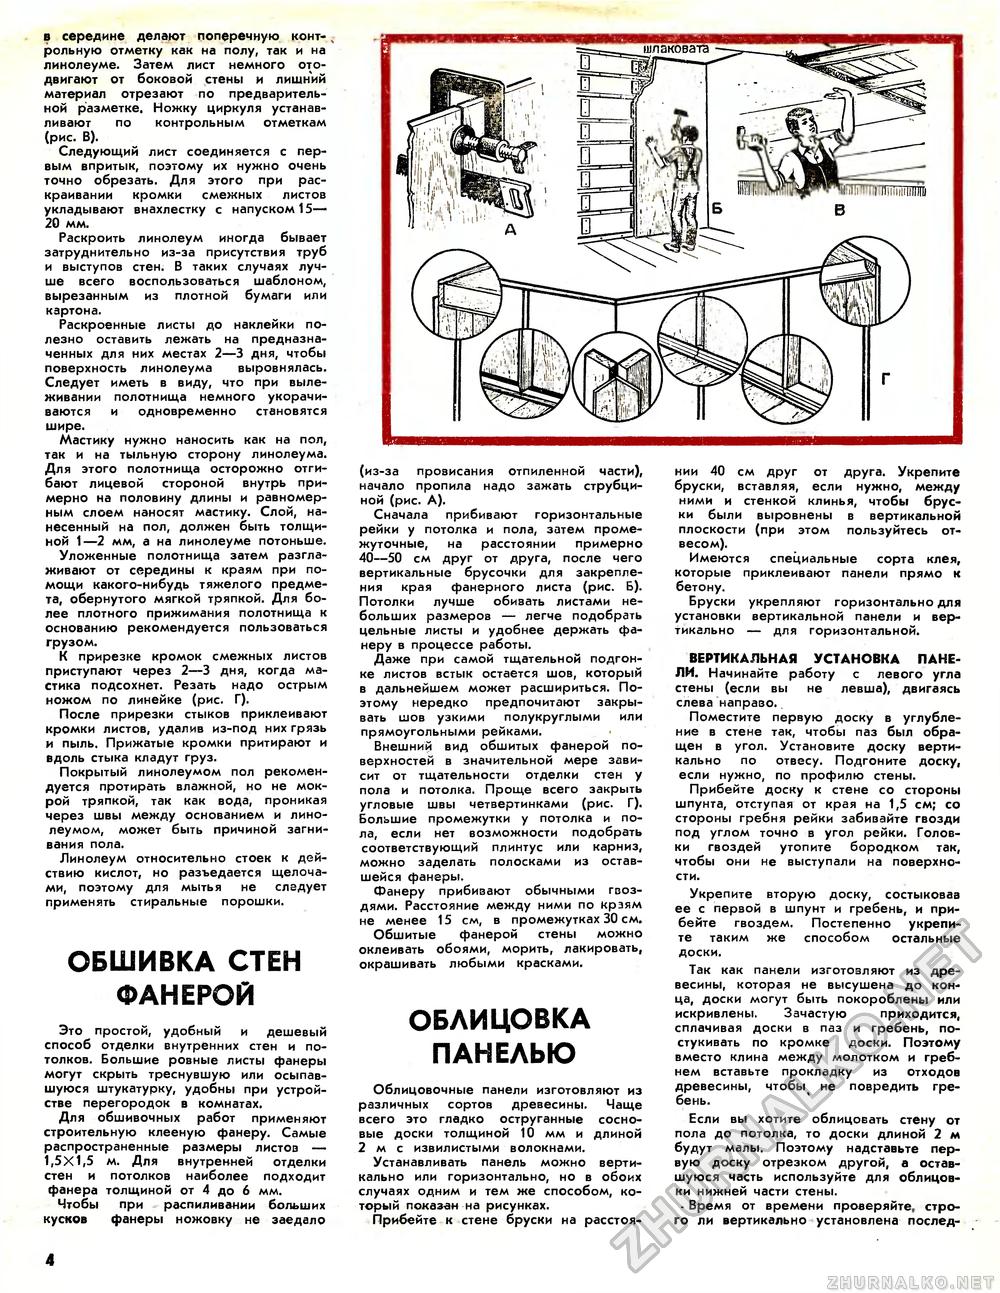 Юный техник - для умелых рук 1987-03, страница 4